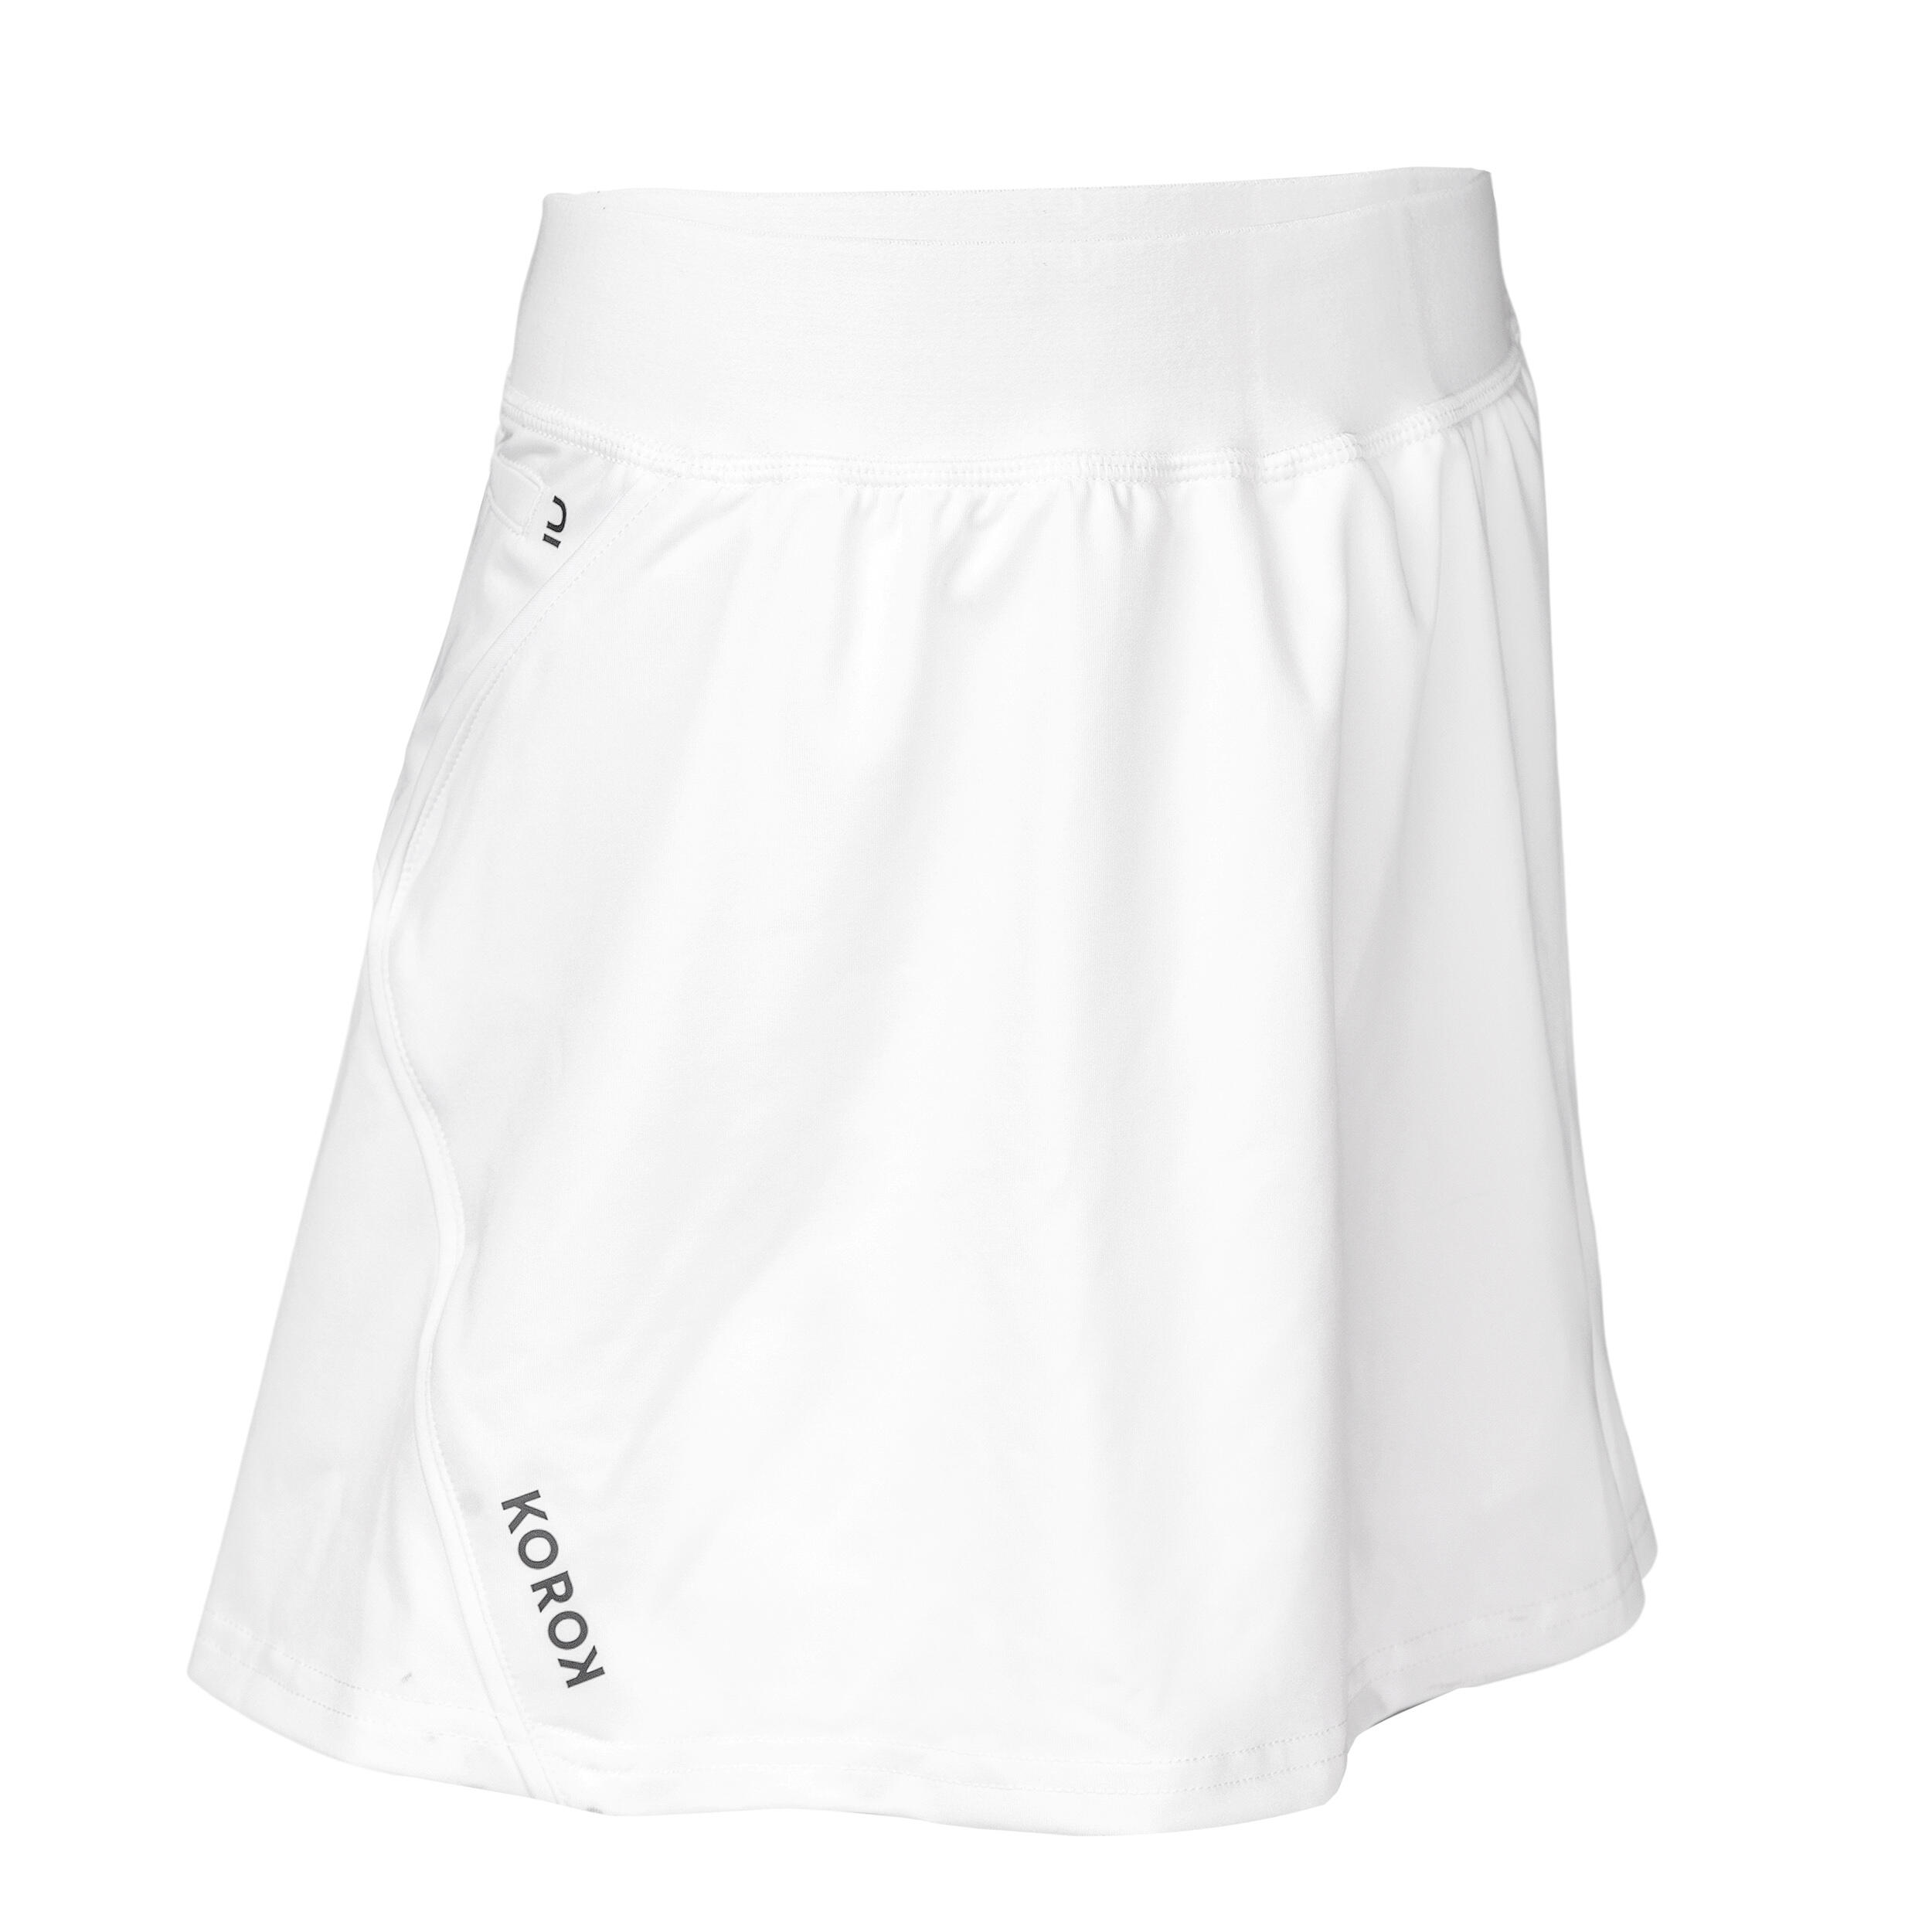 Girls' High-Intensity Field Hockey Skirt FH900 - White 4/4